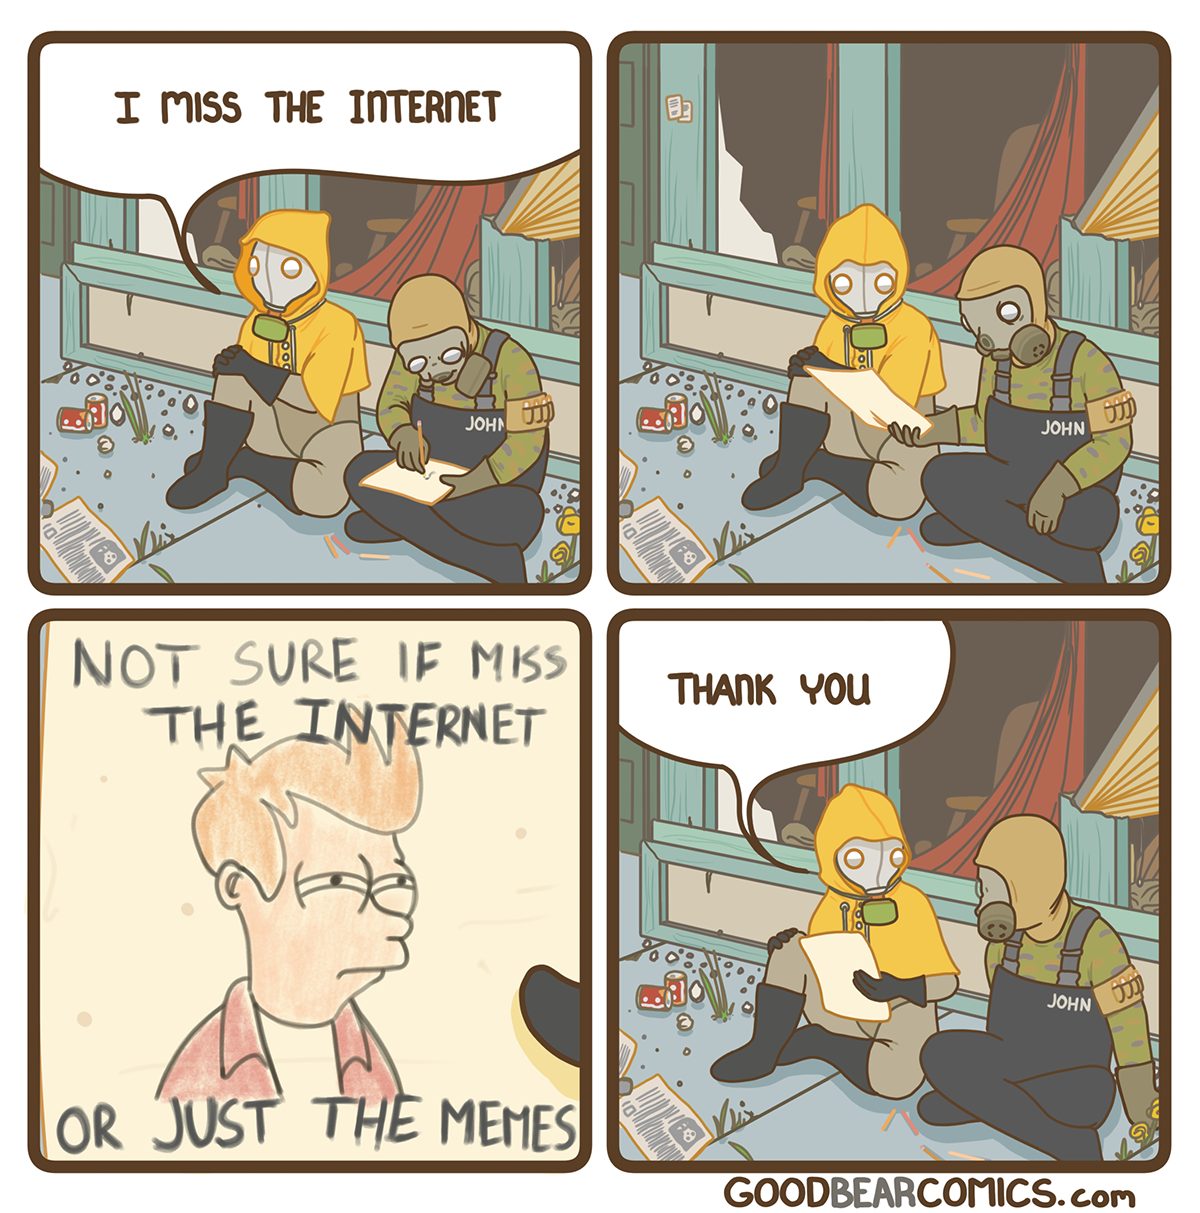 "Echo de menos Internet"